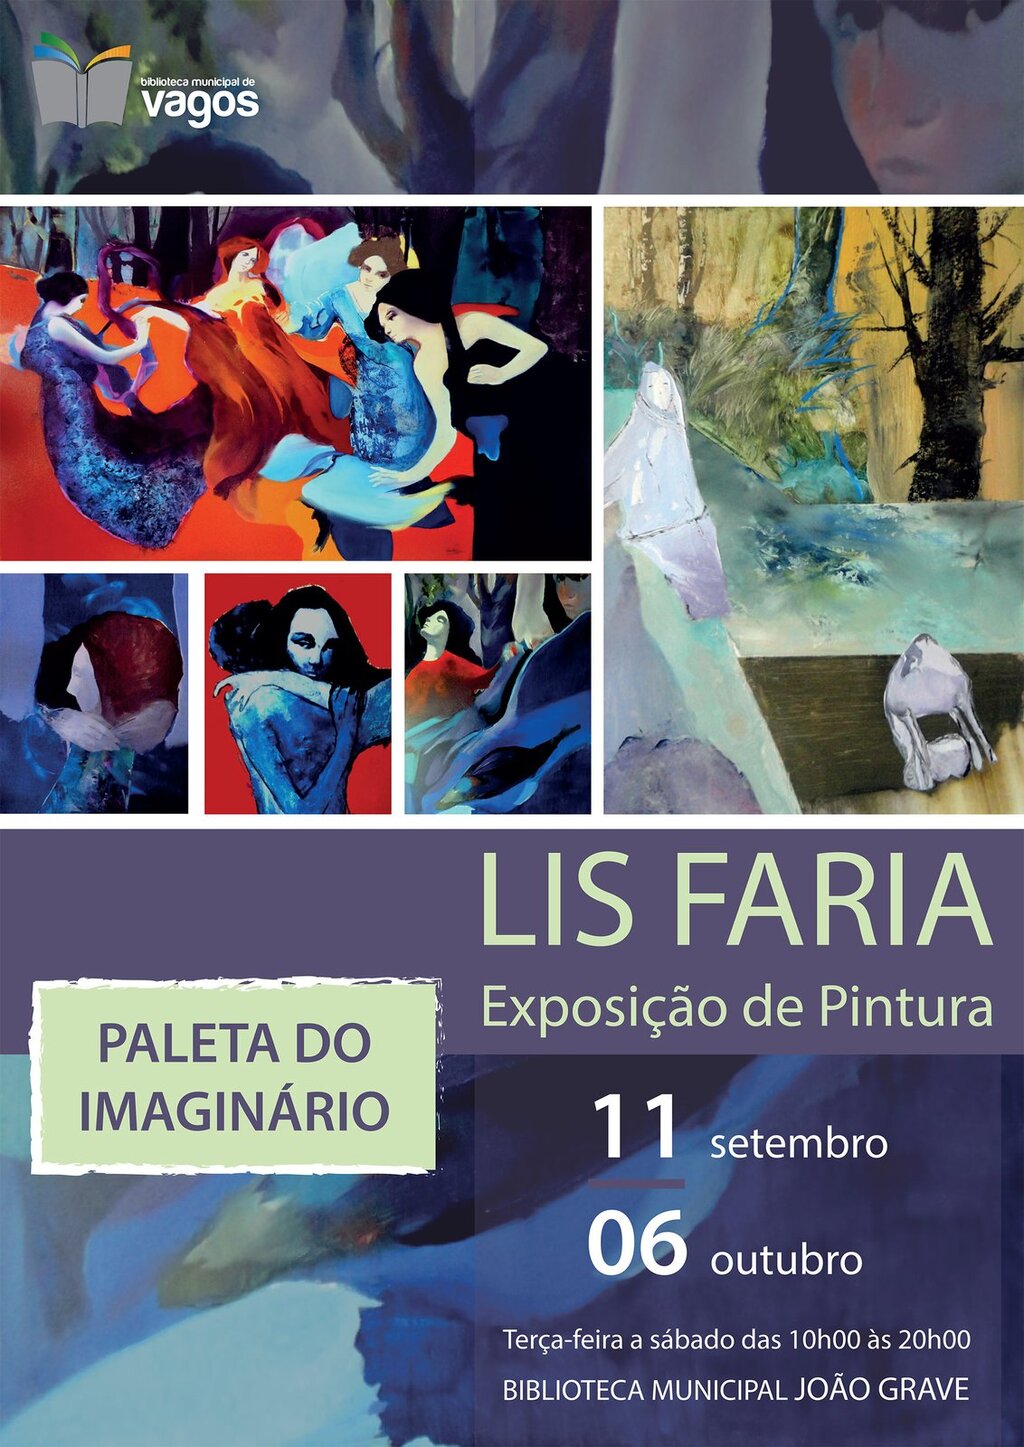 Exposição de pintura “Paleta do Imaginário” de Lis Faria, na Biblioteca Municipal João Grave